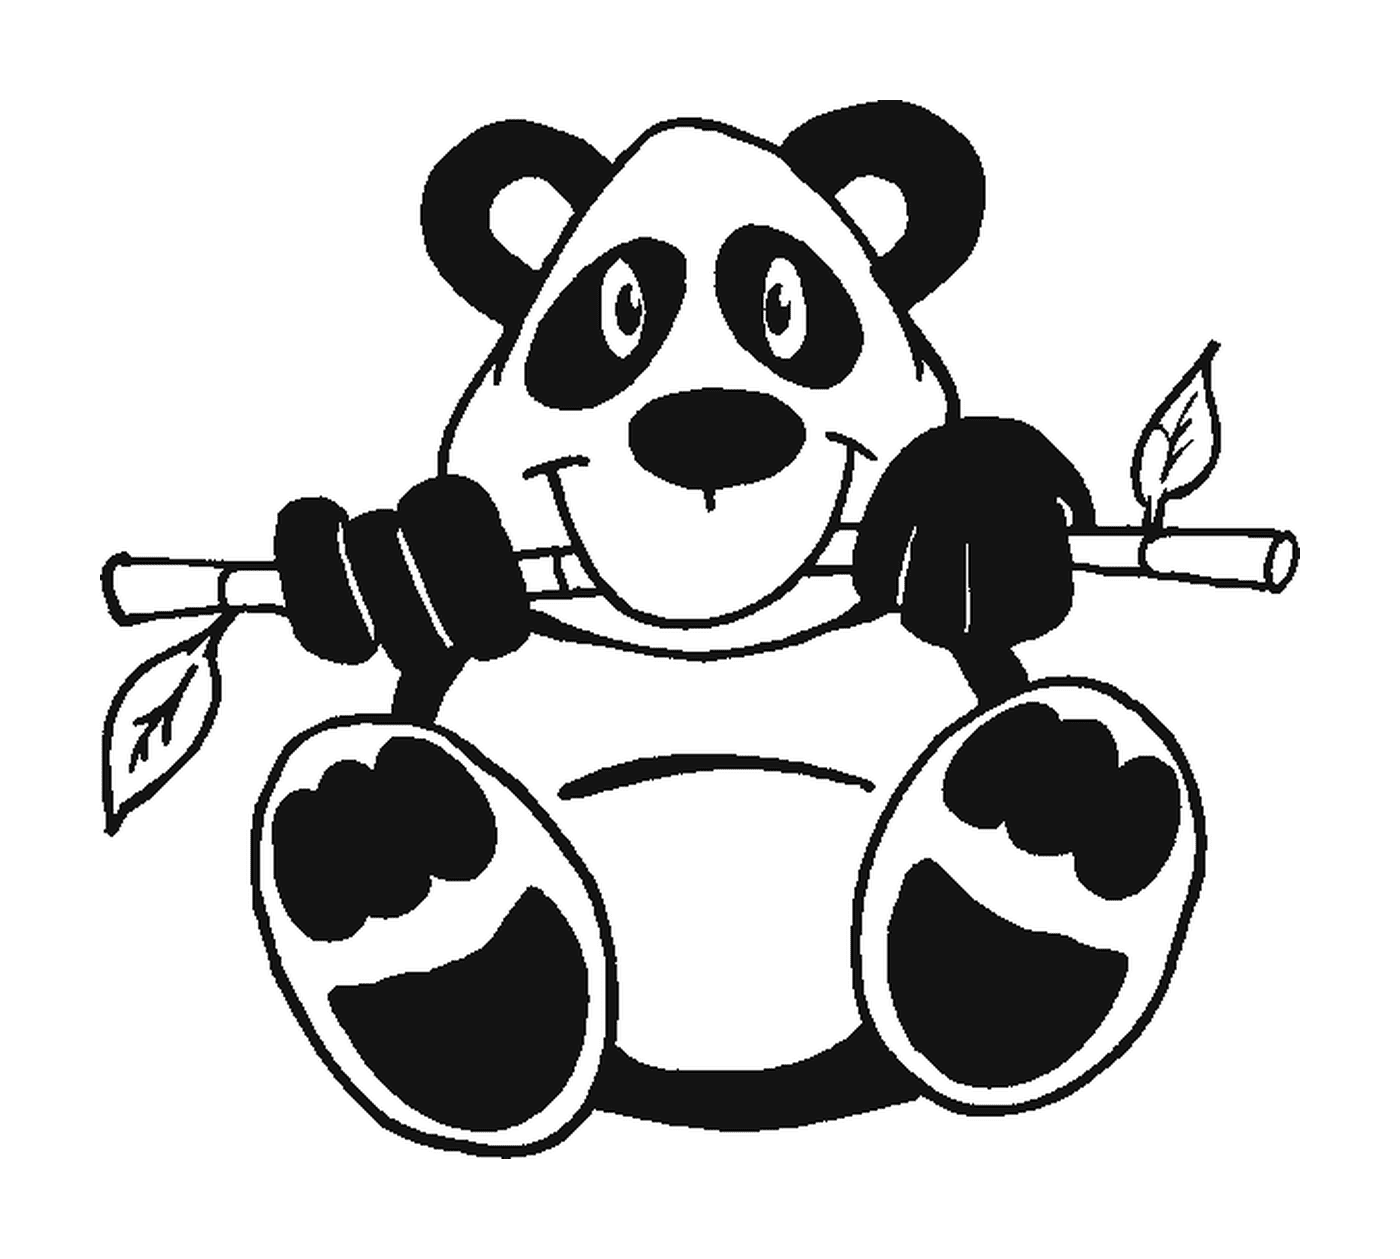  ramo superior empolado panda 